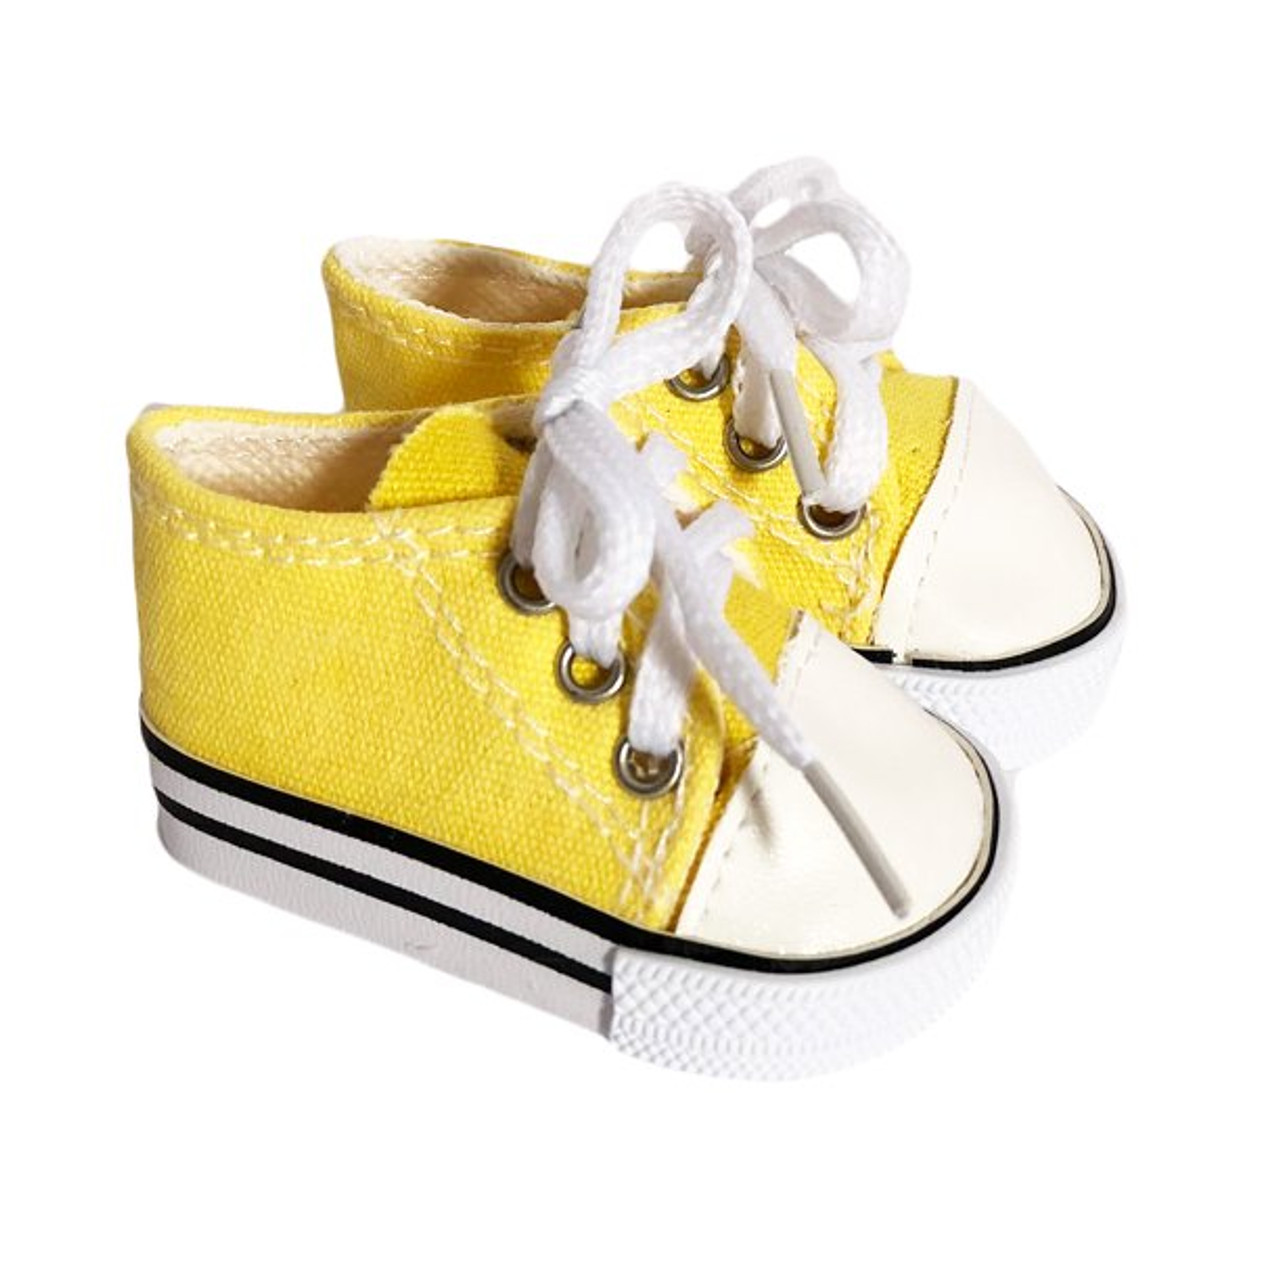 Opbevares i køleskab Røg Afsnit Yellow Canvas Tennis Shoes Fits 18 Inch Dolls